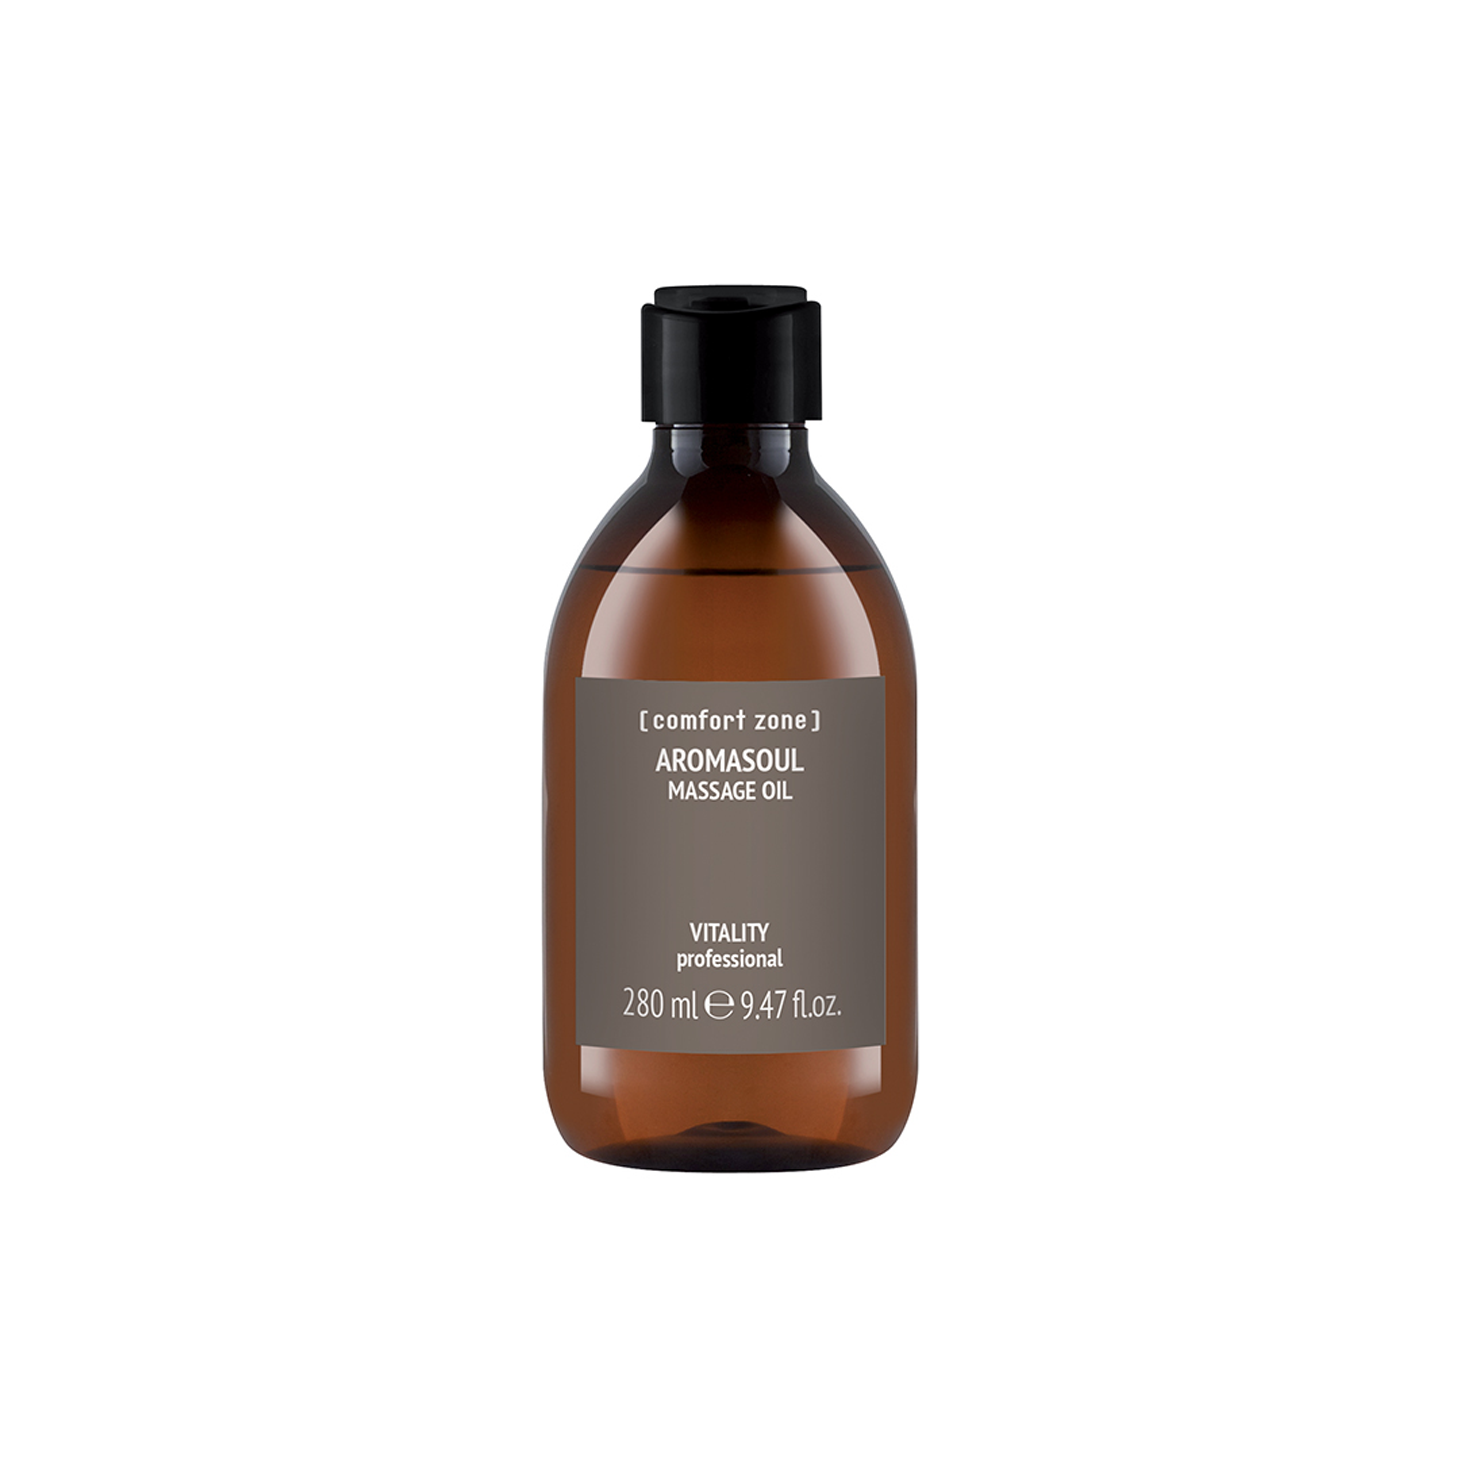 Aromasoul Massage Oil Refill Bottle